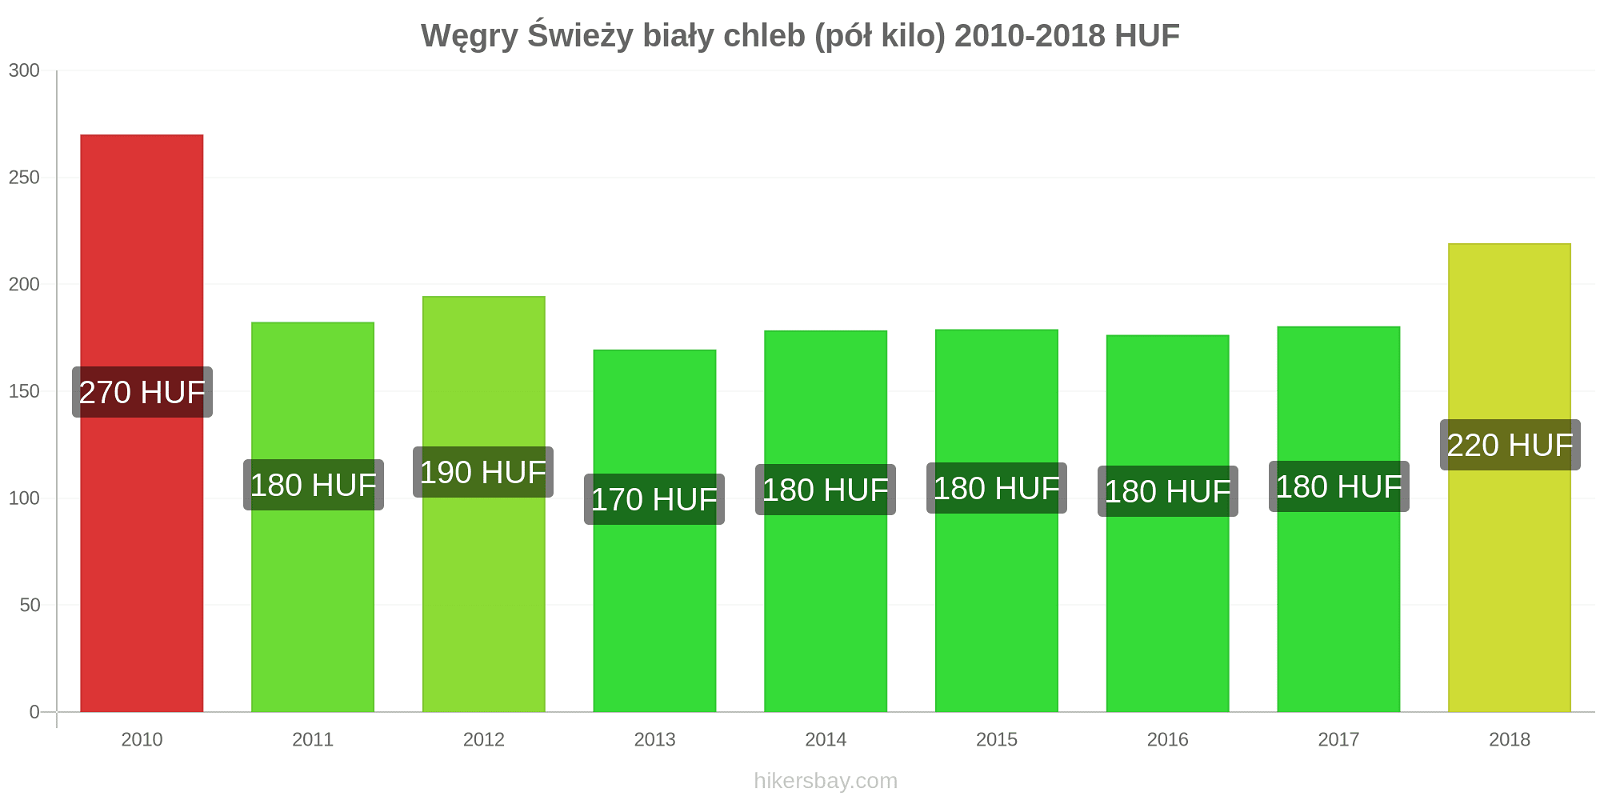 Węgry zmiany cen Chleb pół kilo hikersbay.com